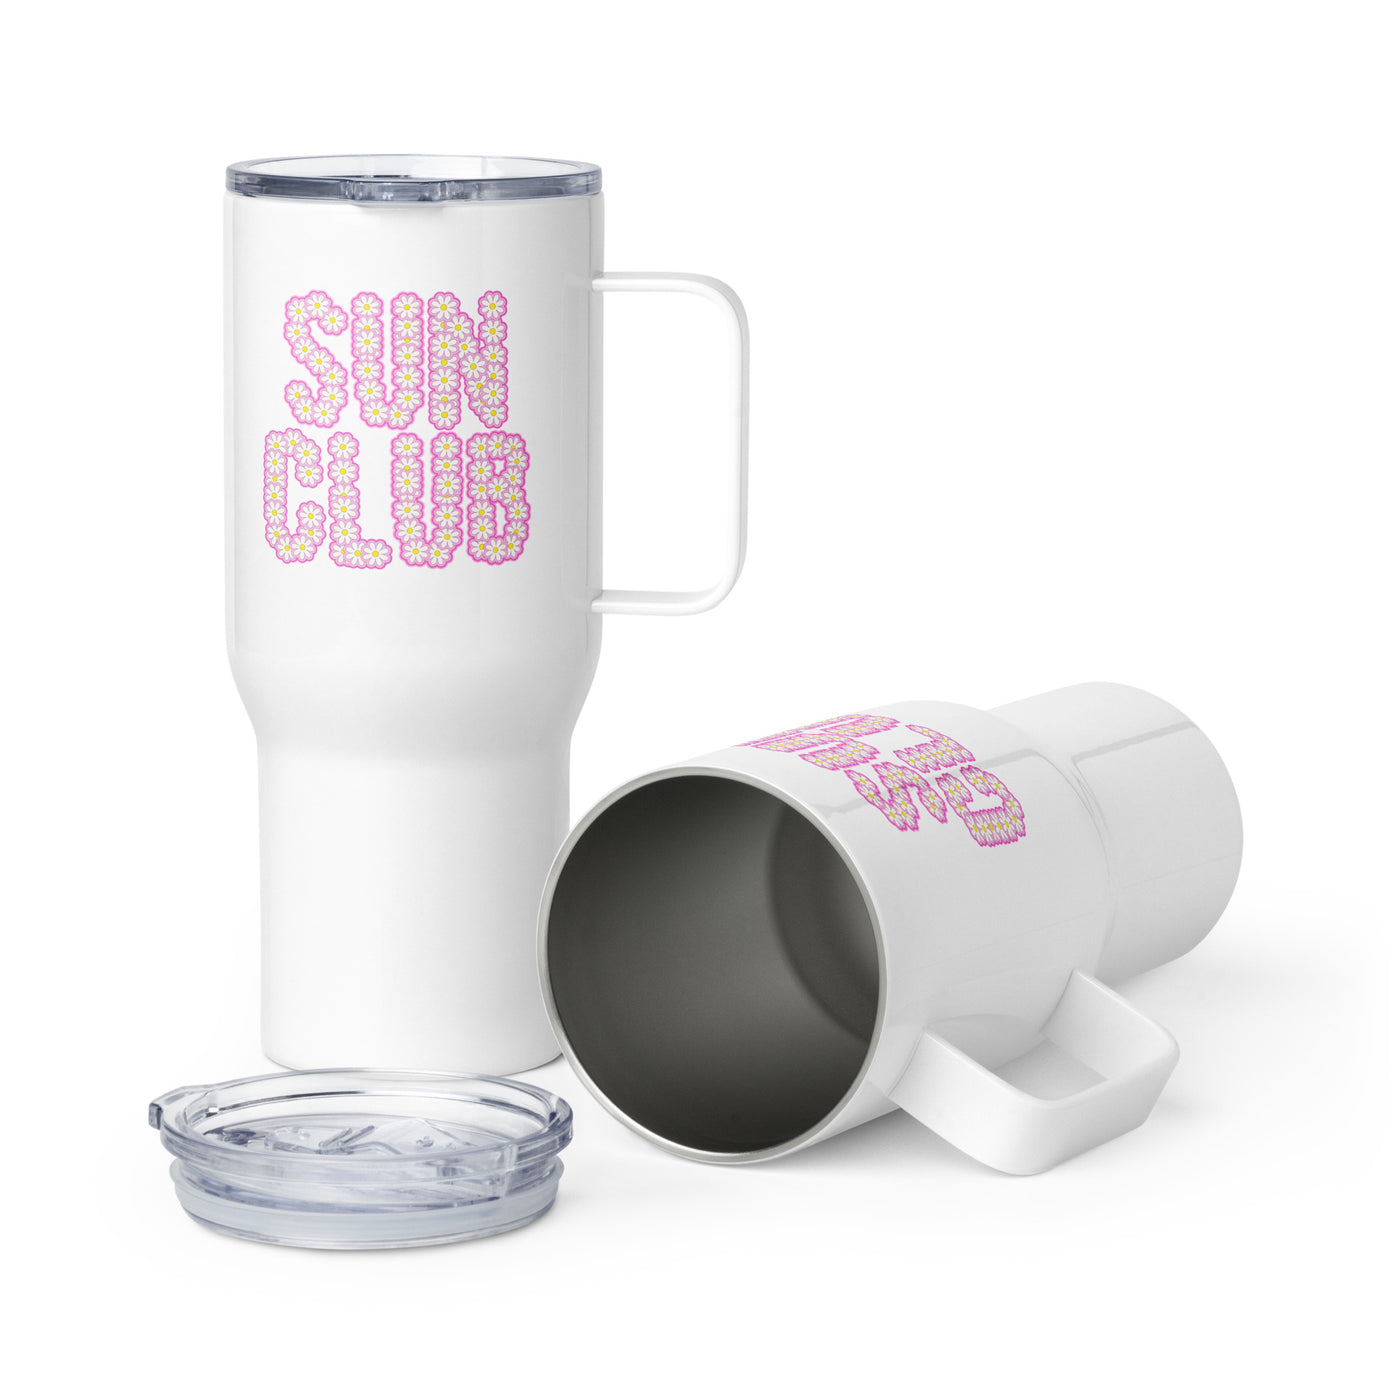 'Sun Club' Travel Mug